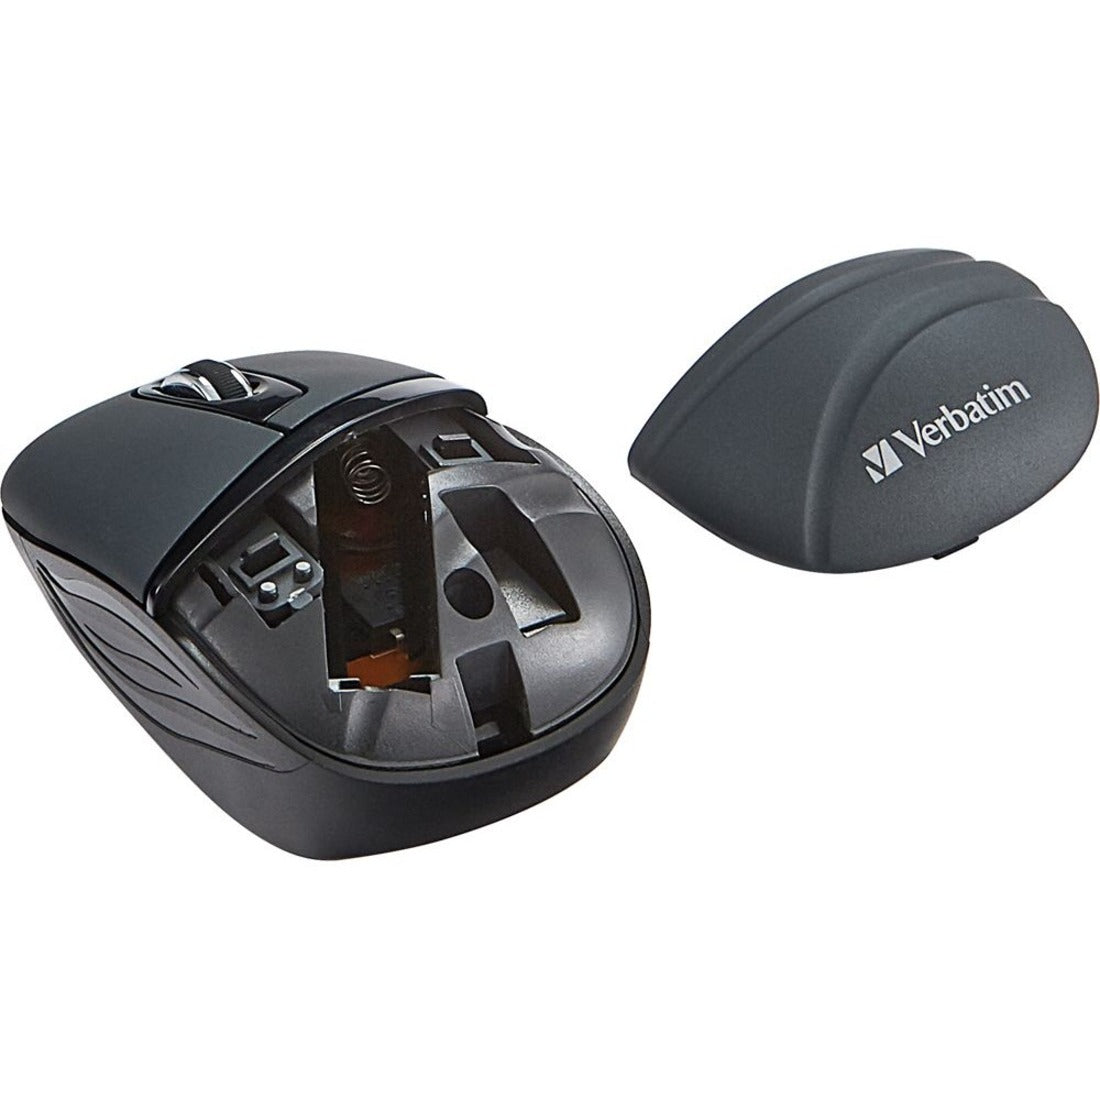 Verbatim 70704 Wireless Mini Travel Mouse, Commuter Series - Graphite